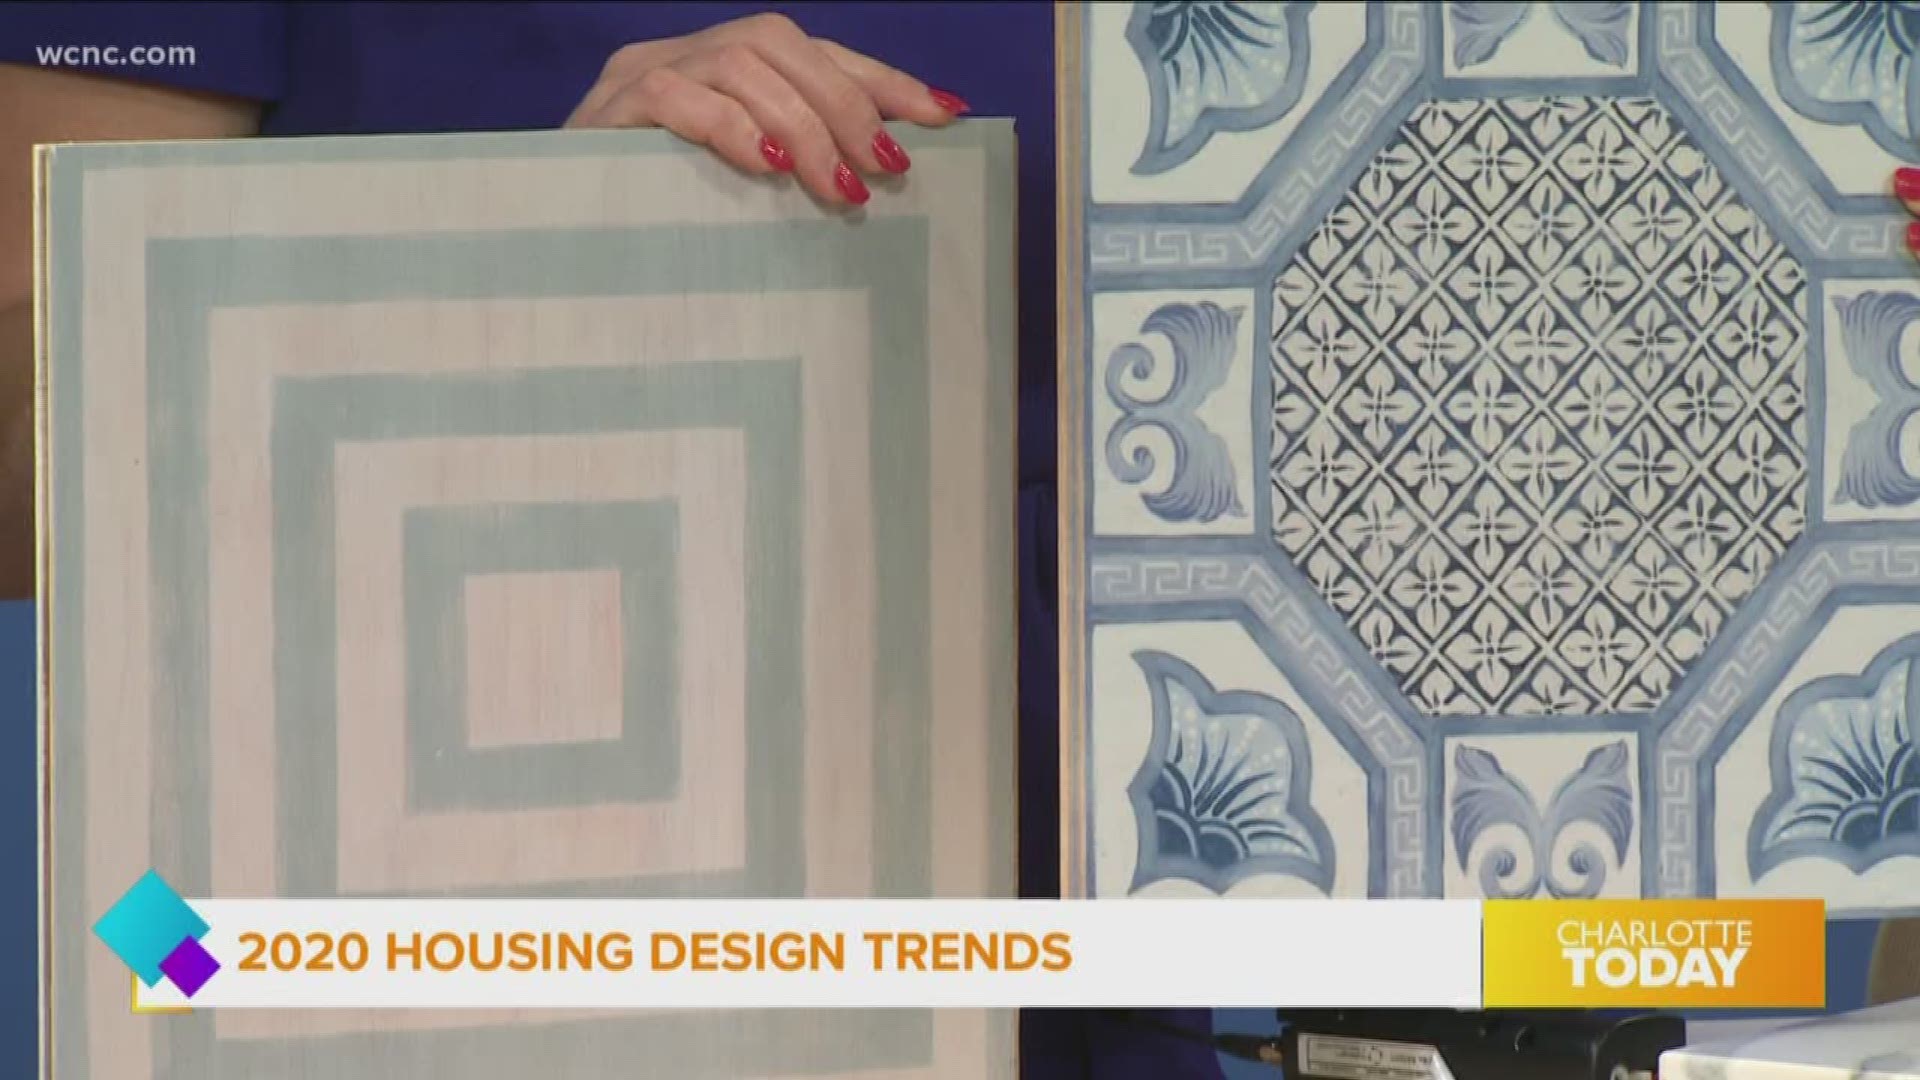 Interior designer Lauren Clement shares what’s trending in home design.